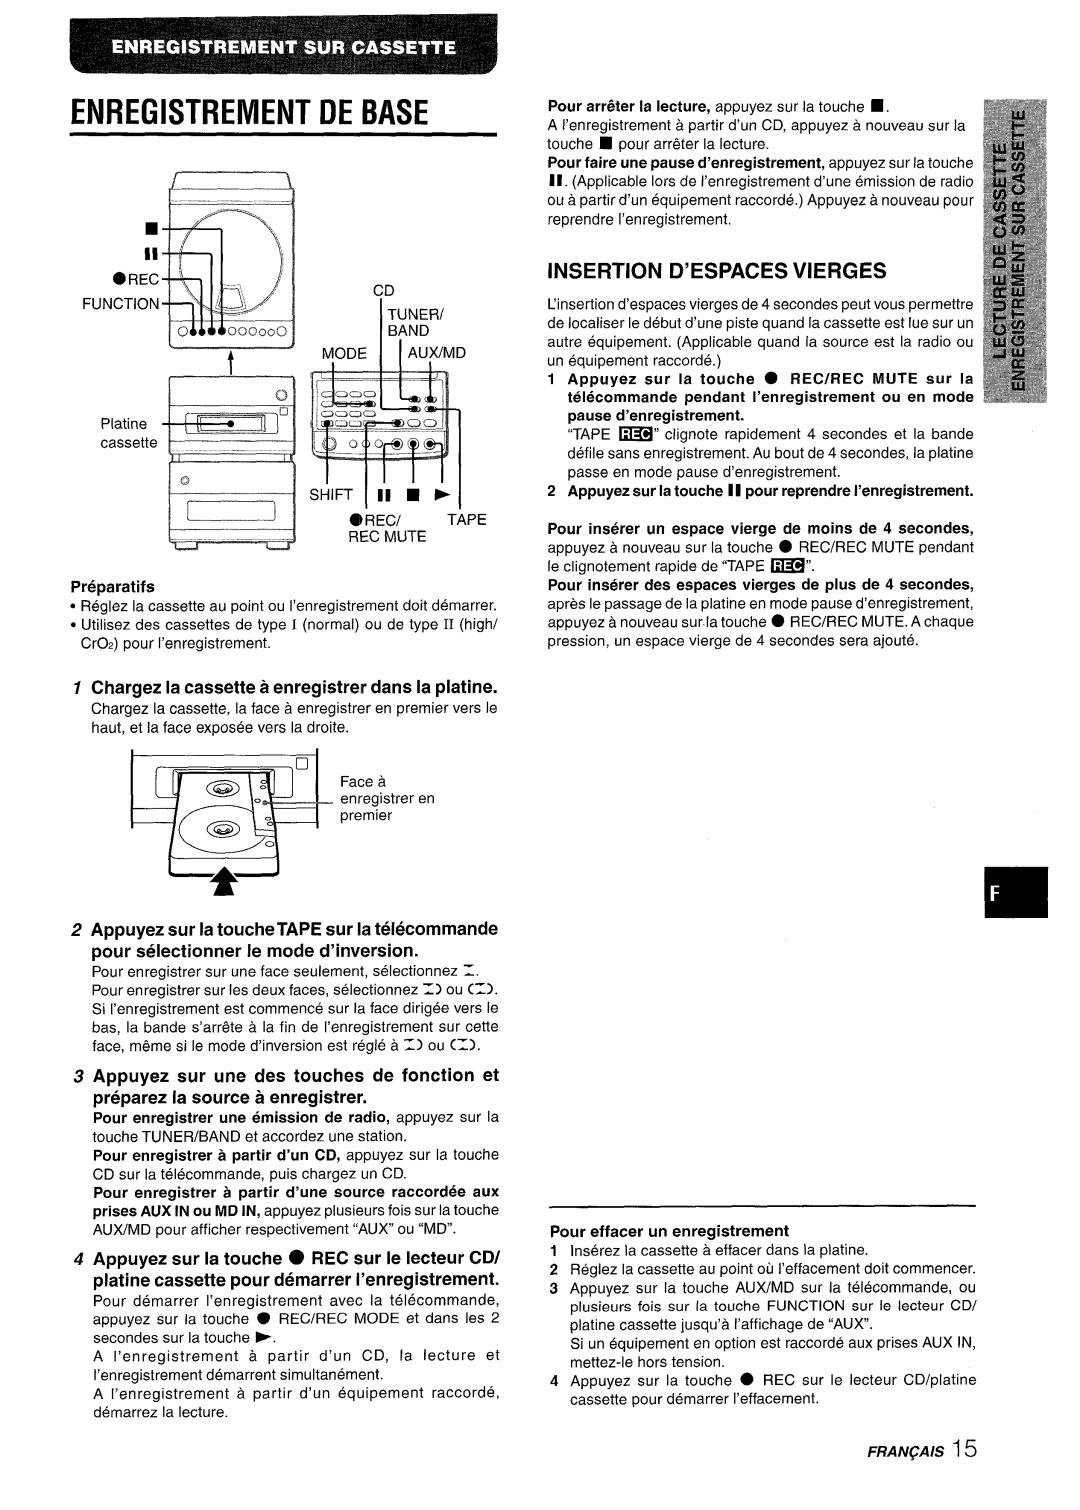 Aiwa XR-M88 manual Insertion D’Espaces Vierges, Chargez la cassette a enregistrer clans la platine 